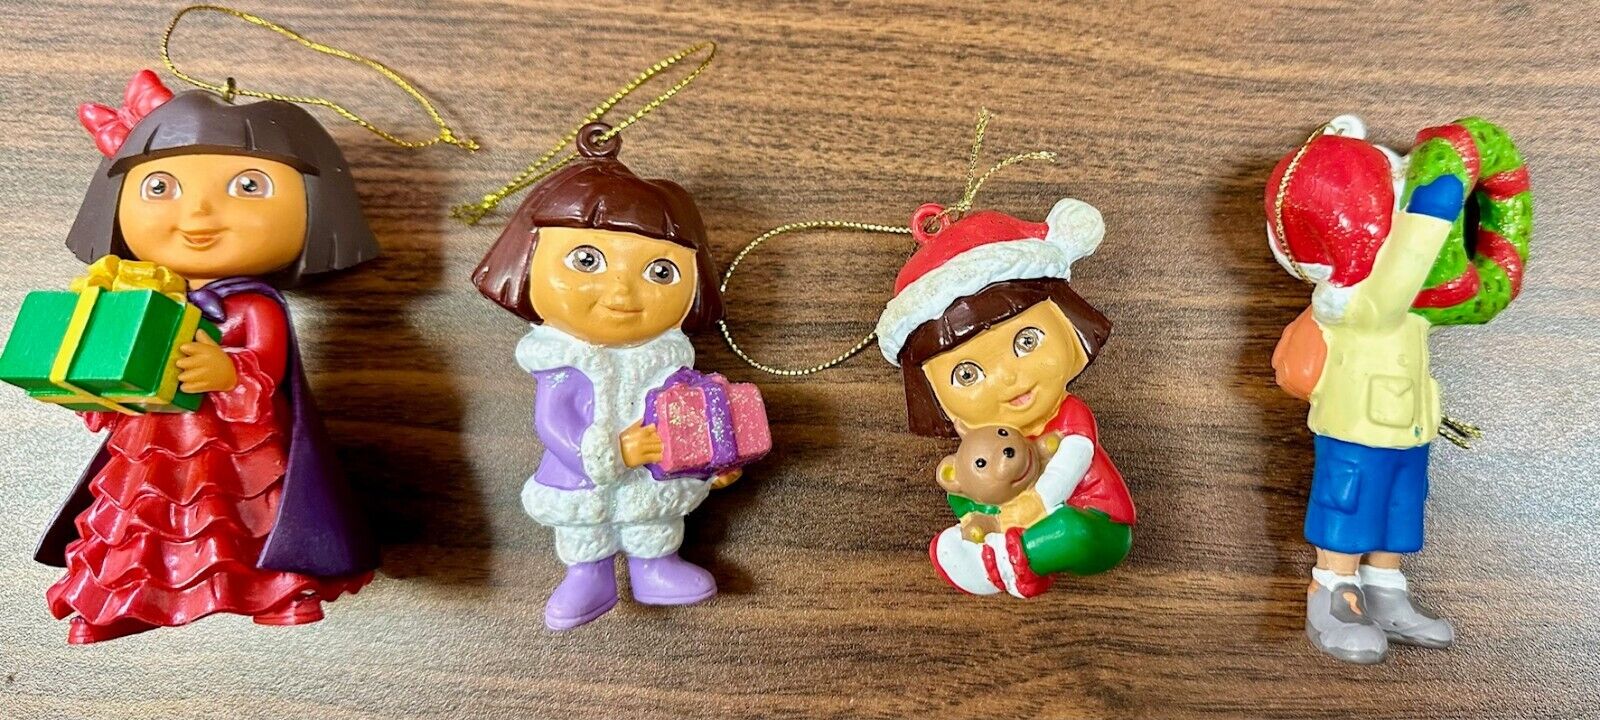 Dora the Explorer Christmas Ornaments Set of 4